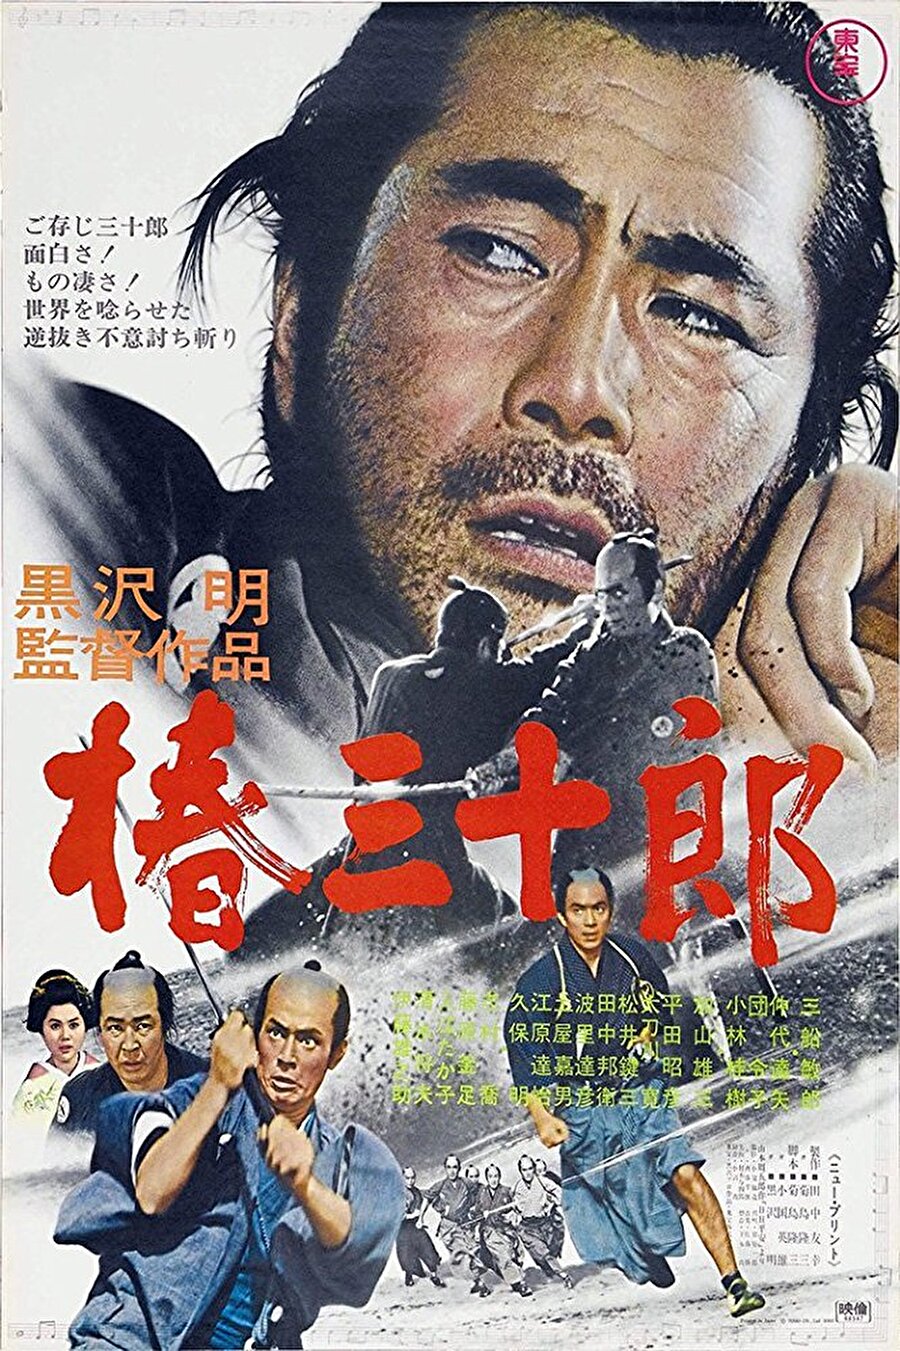 3.Sanjuro (1962)

                                    
                                    
                                    Bu filmde ‘şehre dışardan gelen yabancı’ teması gayet lakayıt işlenmiştir. Toshiro Mifune’nin olaylara girişi, olayların başladığı mekanda şans eseri uyuklarken diyaloglara kulak misafiri olmasıyla başlar. Bir deste genç, kendi aralarında iktidarı devirme planı yaparlar ve valiye giderler. Vali fikirlerini dinleyip bir buluşma ayarlar ve kendisinin buluşmaya daha sonra dahil olacağını söyler. Gençler buluşma yerinde habersizce beklerken bütün olaylara kulak misafiri olan Mifune gelir ve tüm bunların aslında tuzak olduğunu gençlere anlatır. Olaylar gelişirken envai çeşit politik manevra ve entrika yaşanır, hepsinde de nereden geldiği ve olaylarla alakası belirsiz olan Mifune bir şekilde olaylara karışır.

  
Sanjuro Usta Kurosawa’nın en komik yapımı olarak gösterilir ve Yojimbo filmi ile de bağlantılıdır.
                                
                                
                                